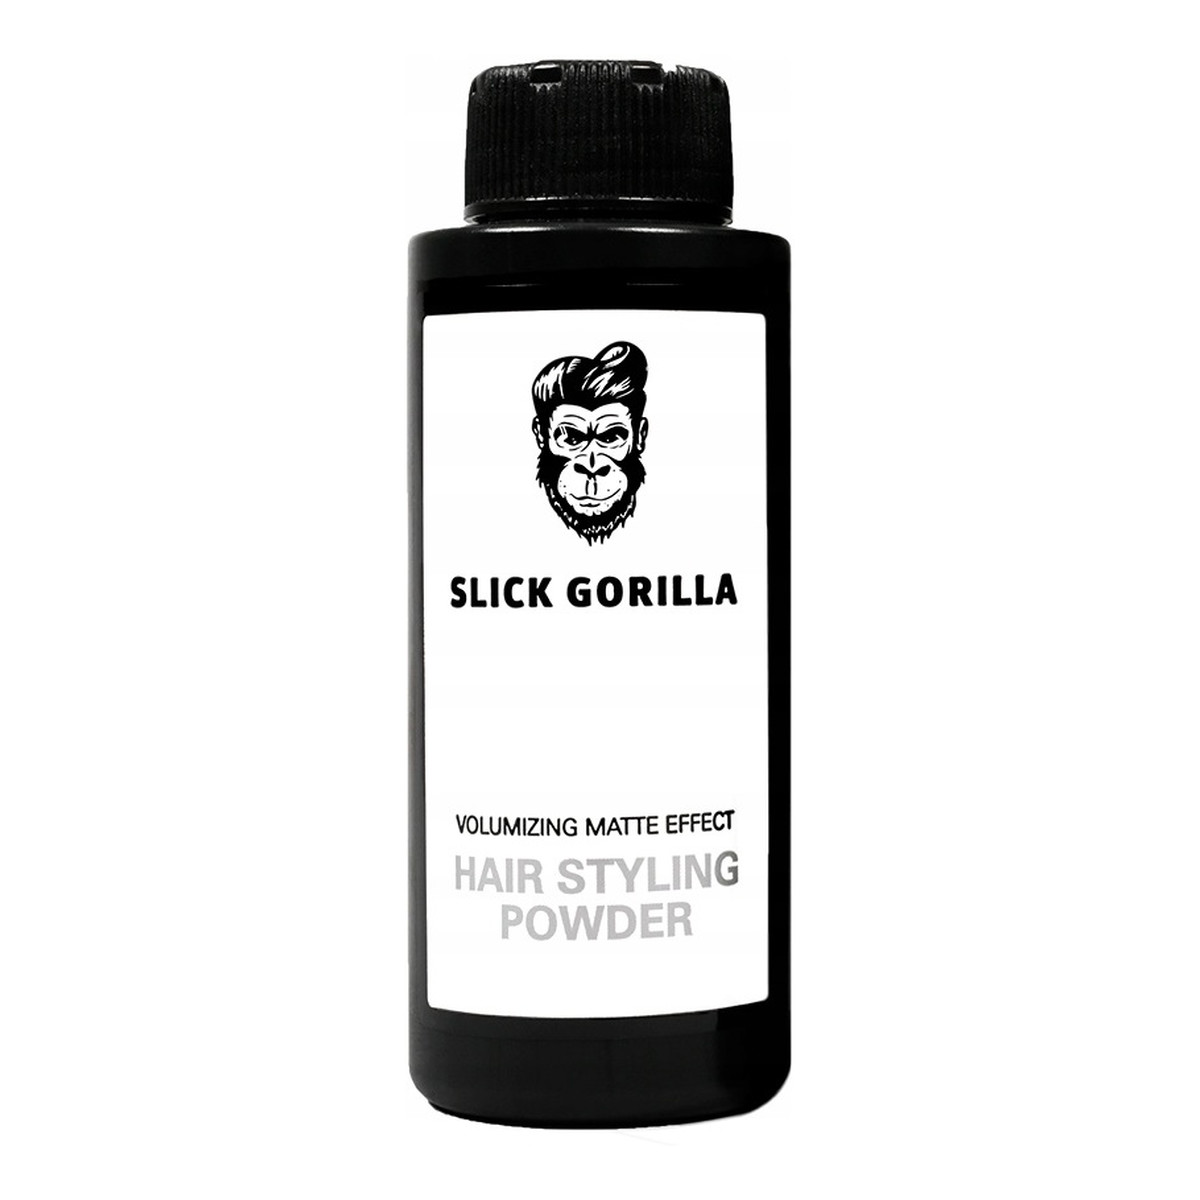 Slick Gorilla Hair Styling Powder Volumizing Matte Effect Nadający objętości puder do stylizacji włosów 20g